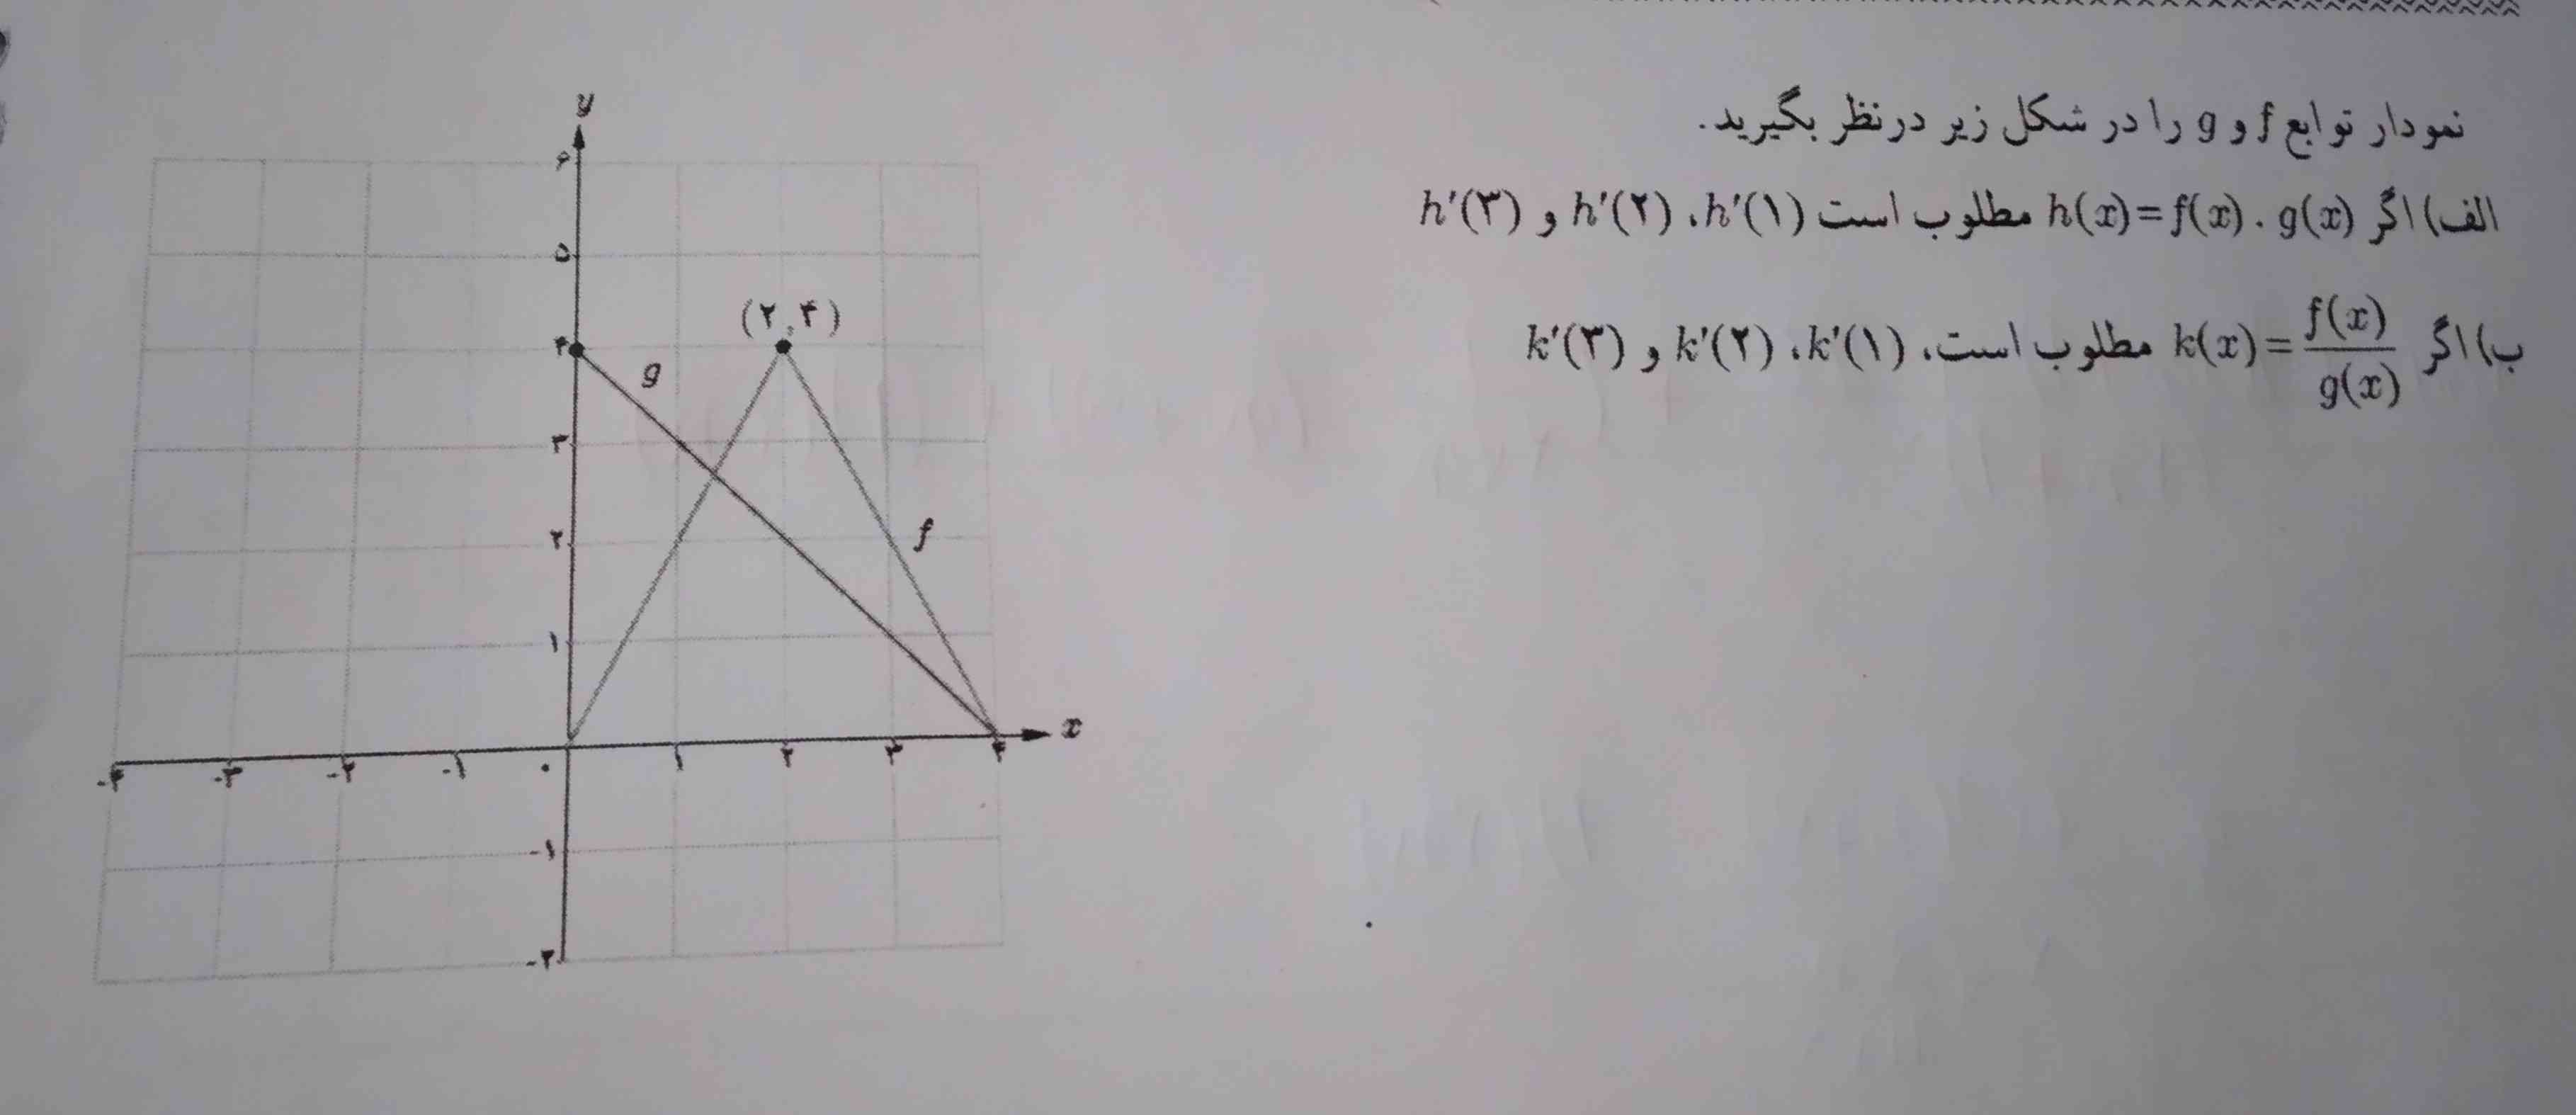 نمودار توابع fوg را در شکل زیر در نظر بگیرید
الف : اگر g(X ) . h(X): f(X) مطلوب است 